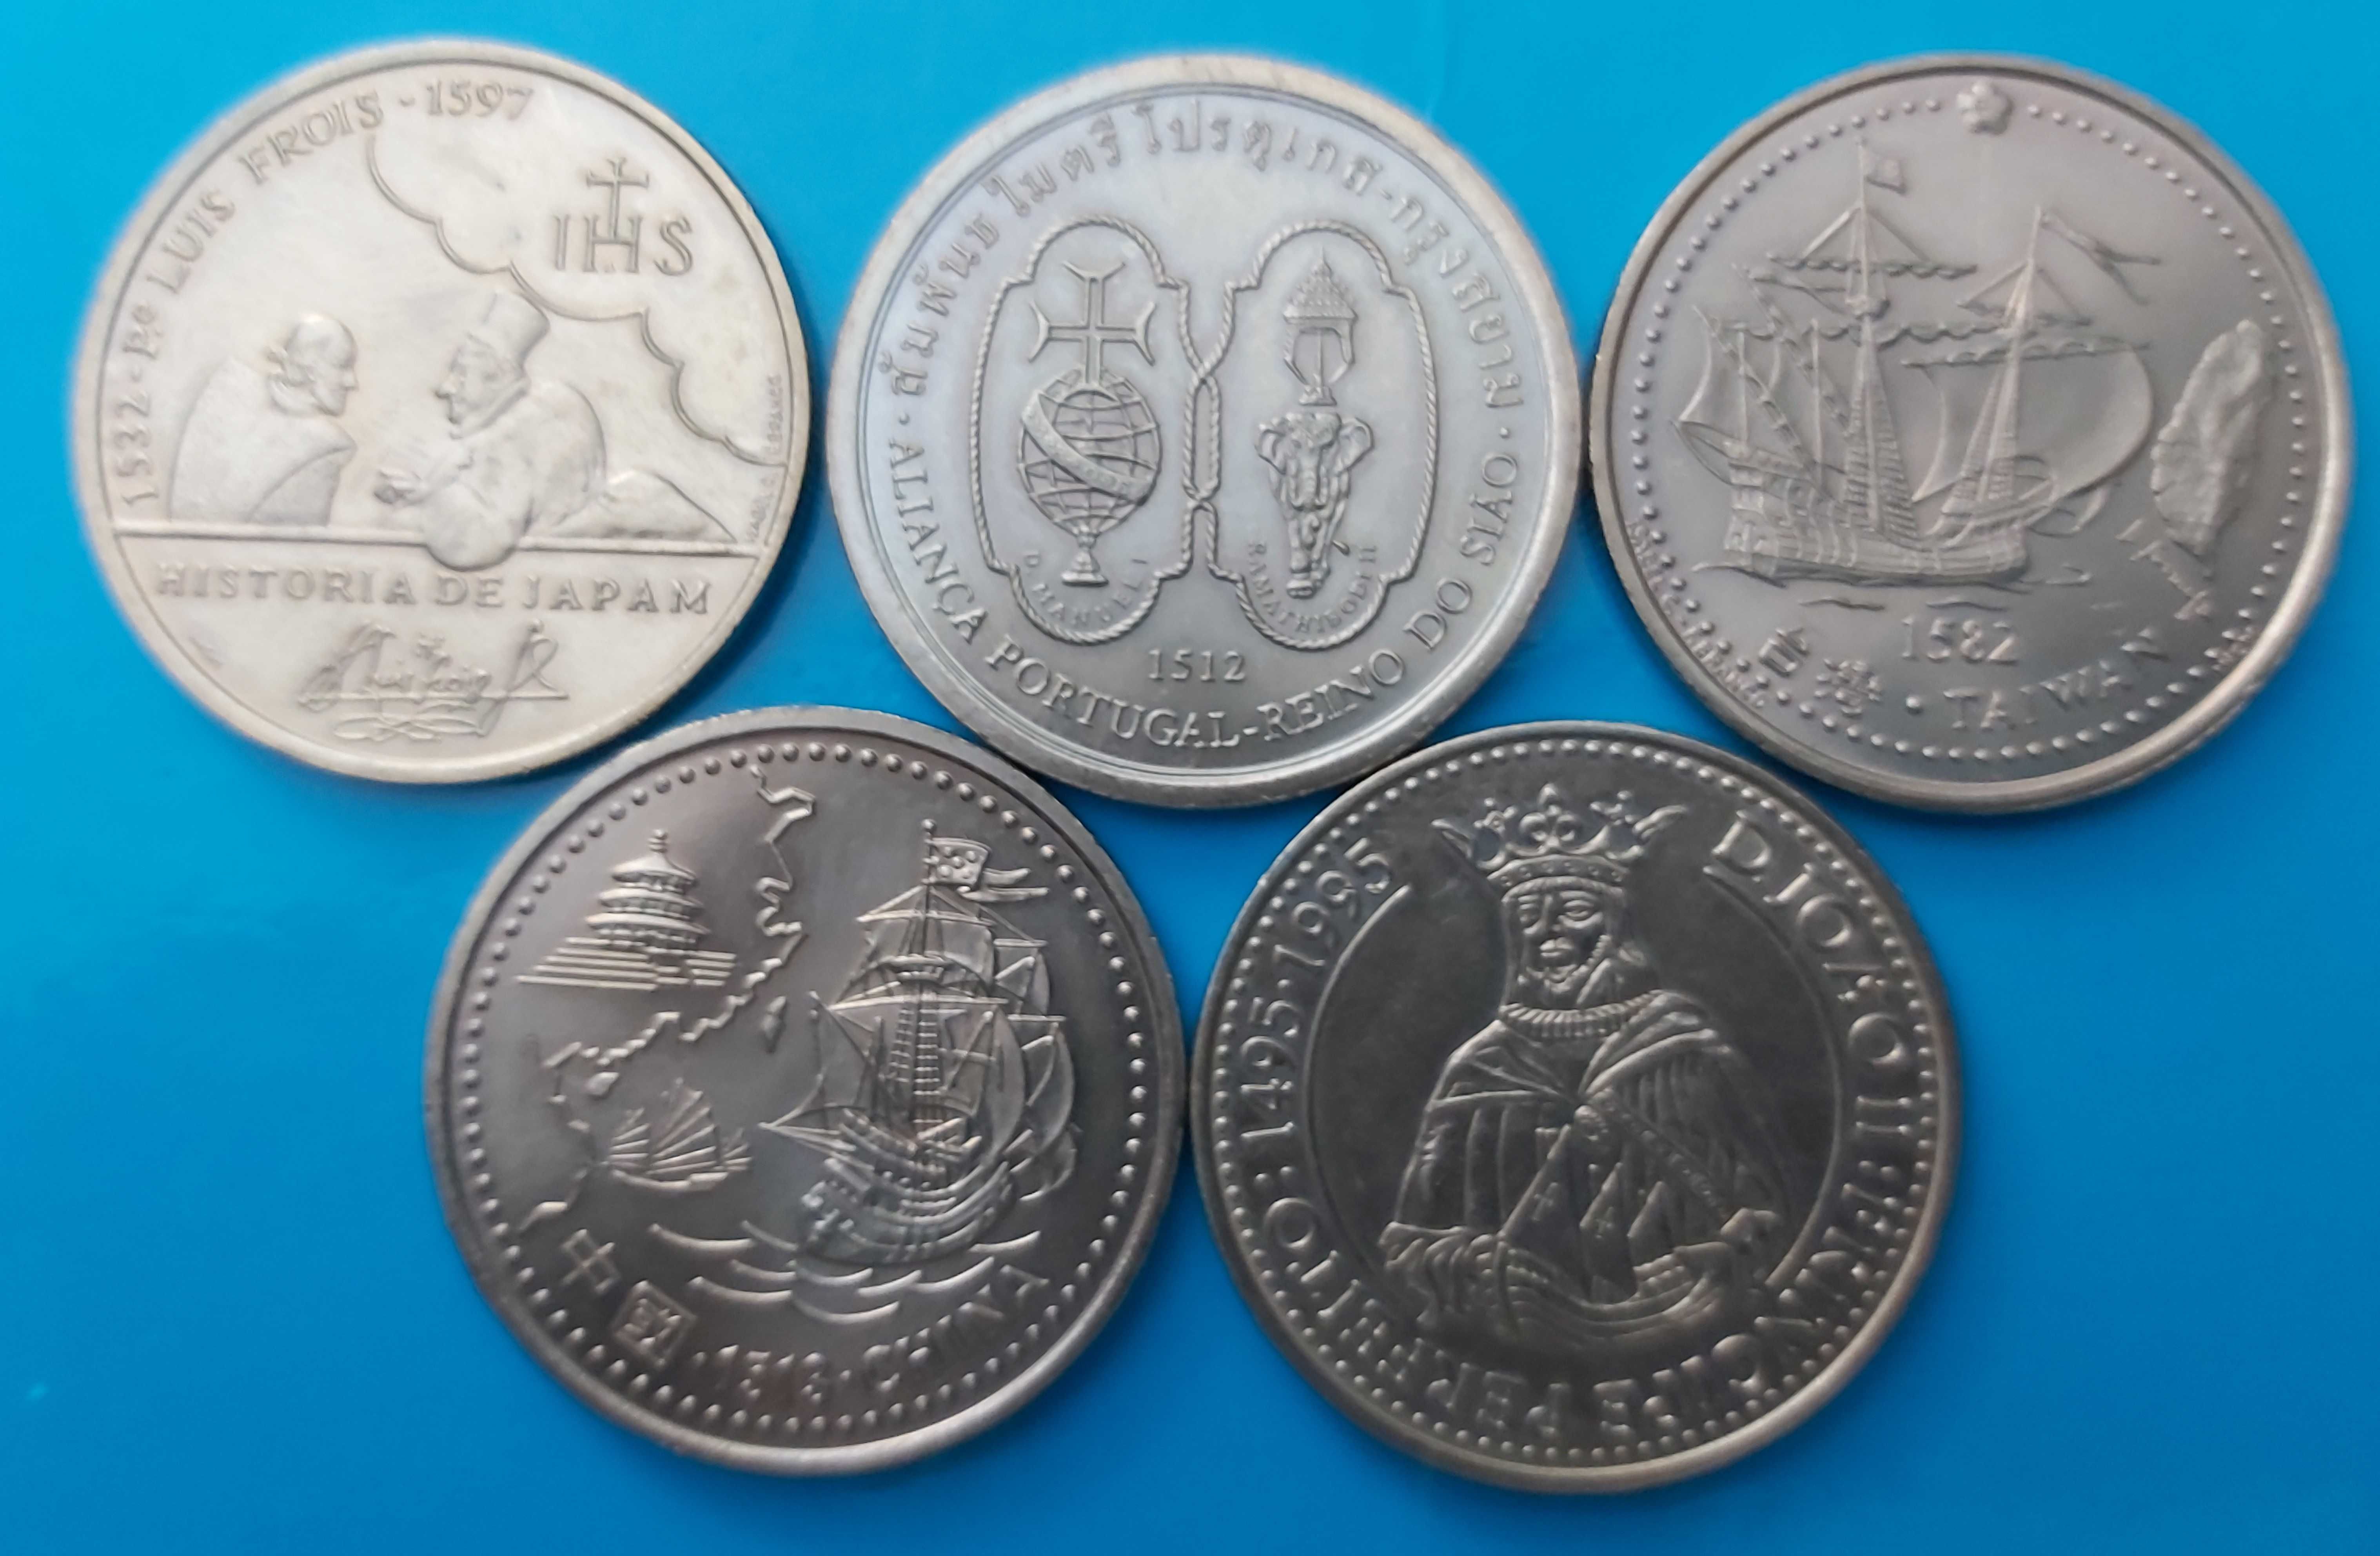 Lote de 5 moedas de 200$00 comemorativas Descobertas Portuguesas